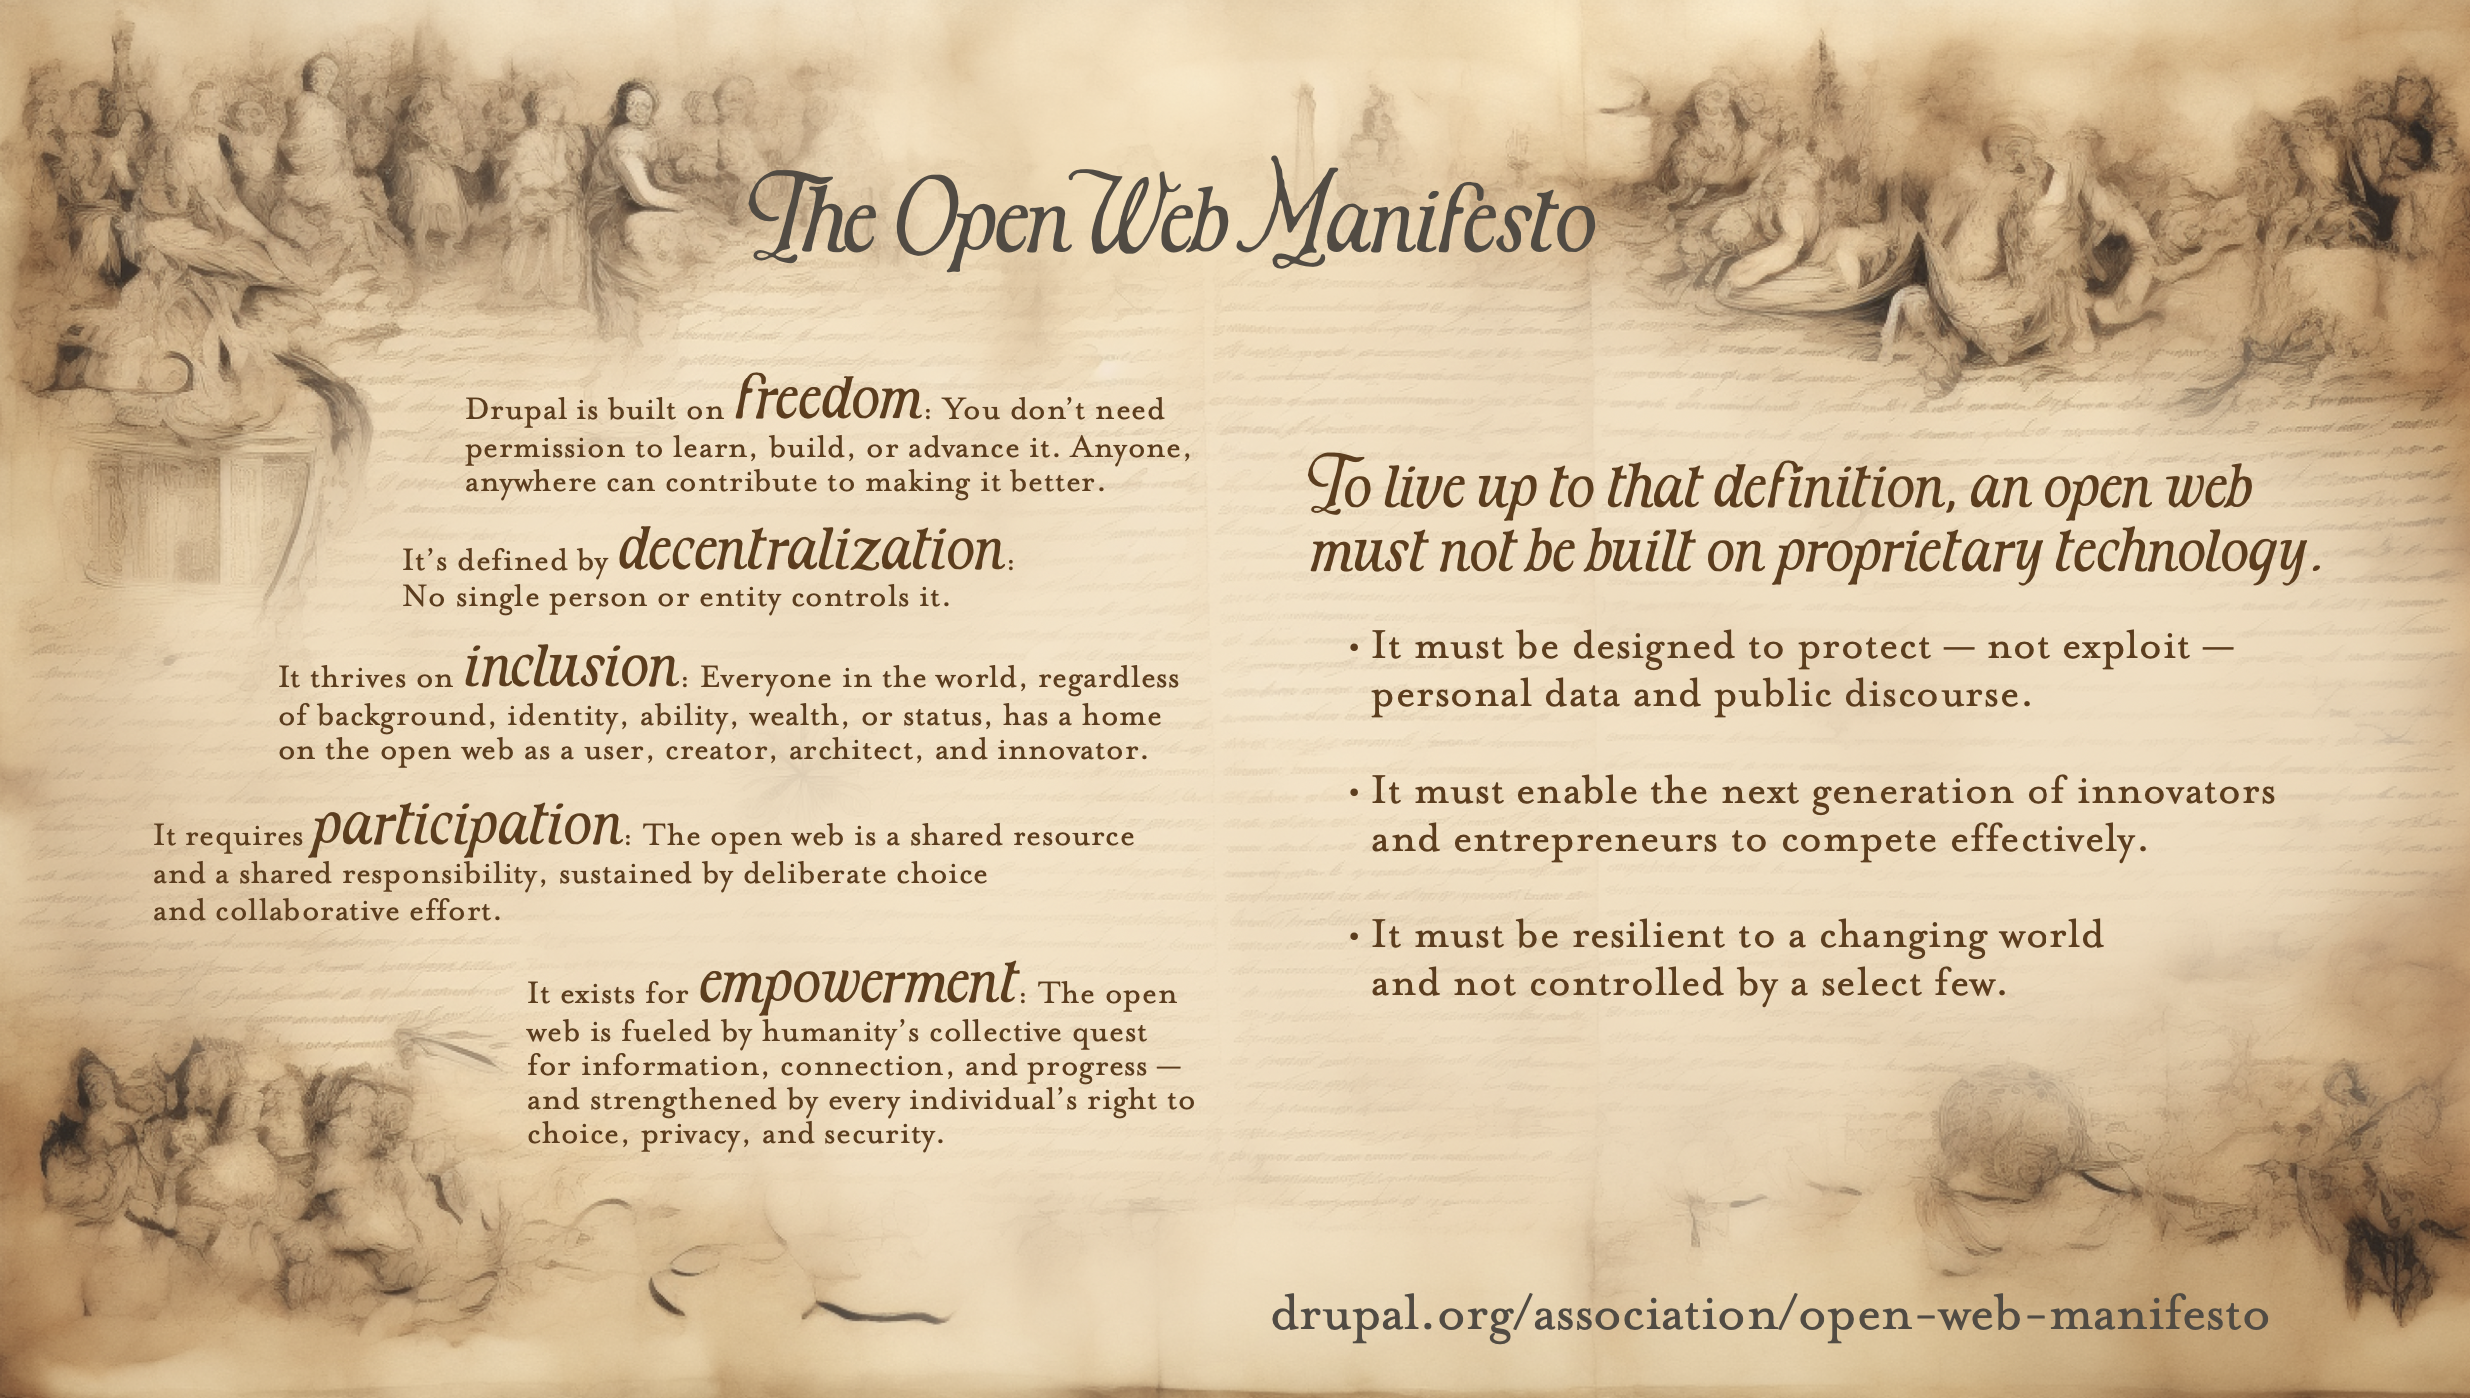 オープンウェブ宣言の概要を記した画像